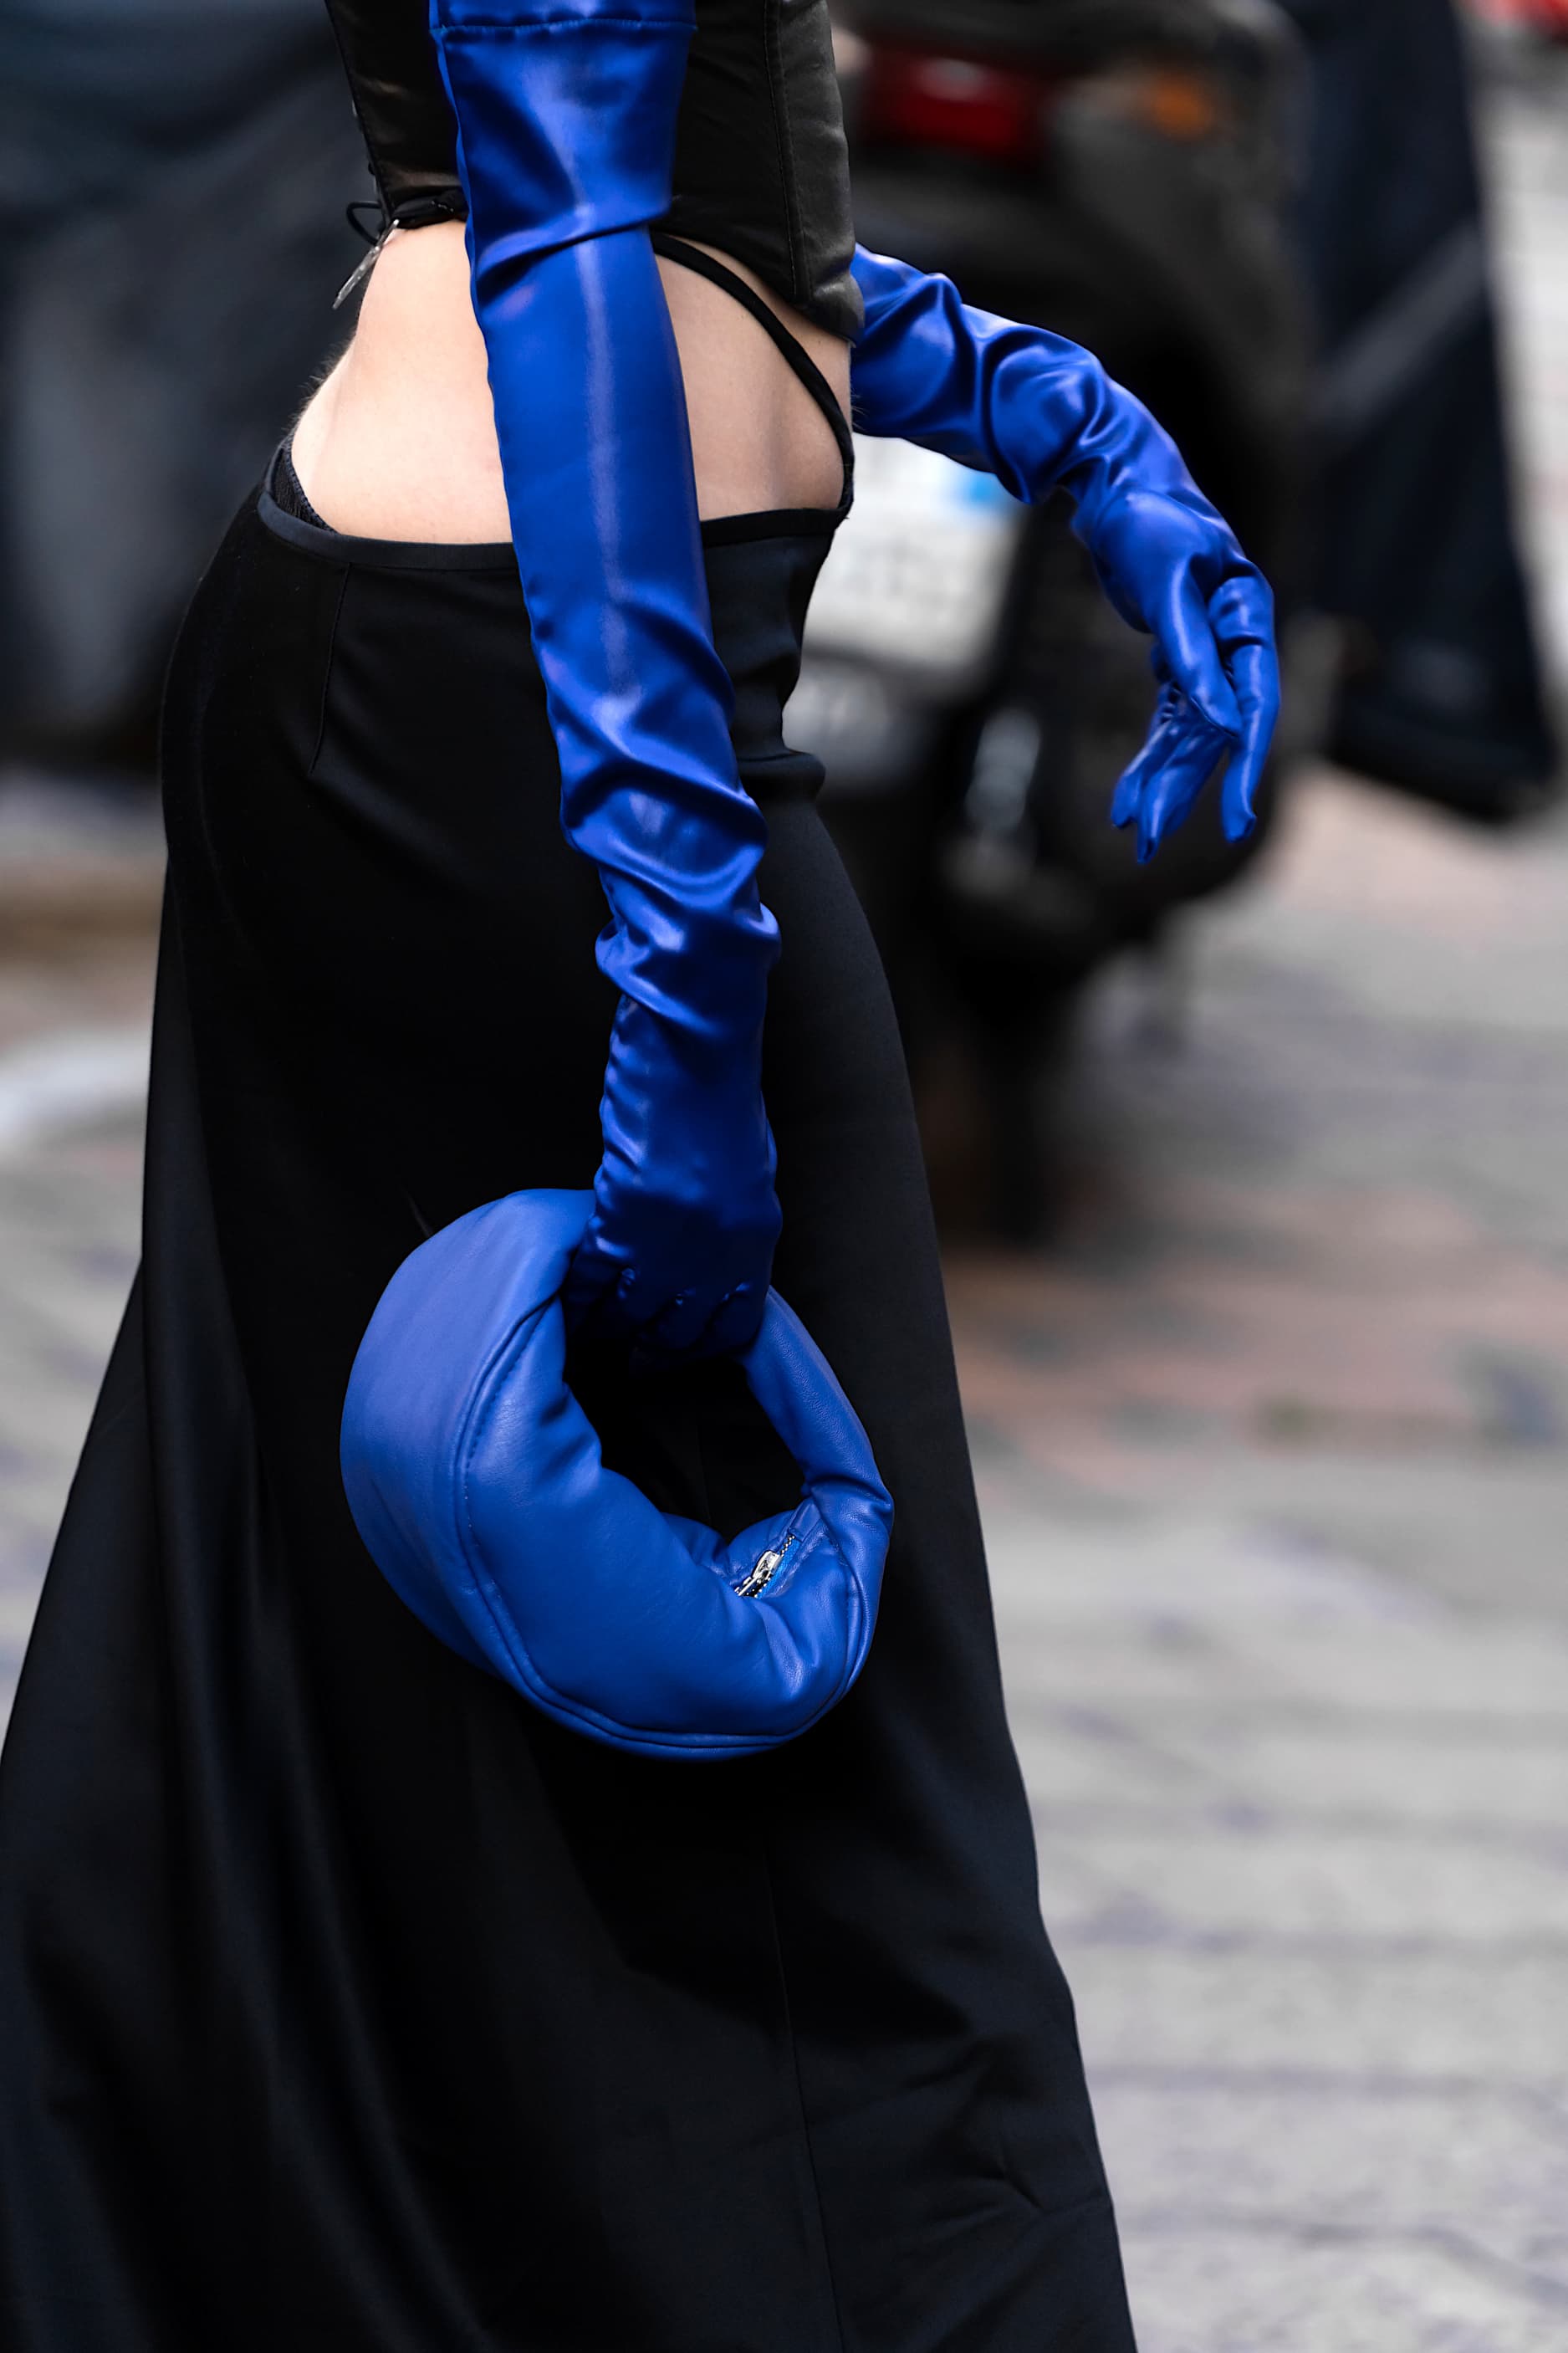 Tendance gants longs : comment faut-il porter les gants d'opéra ?